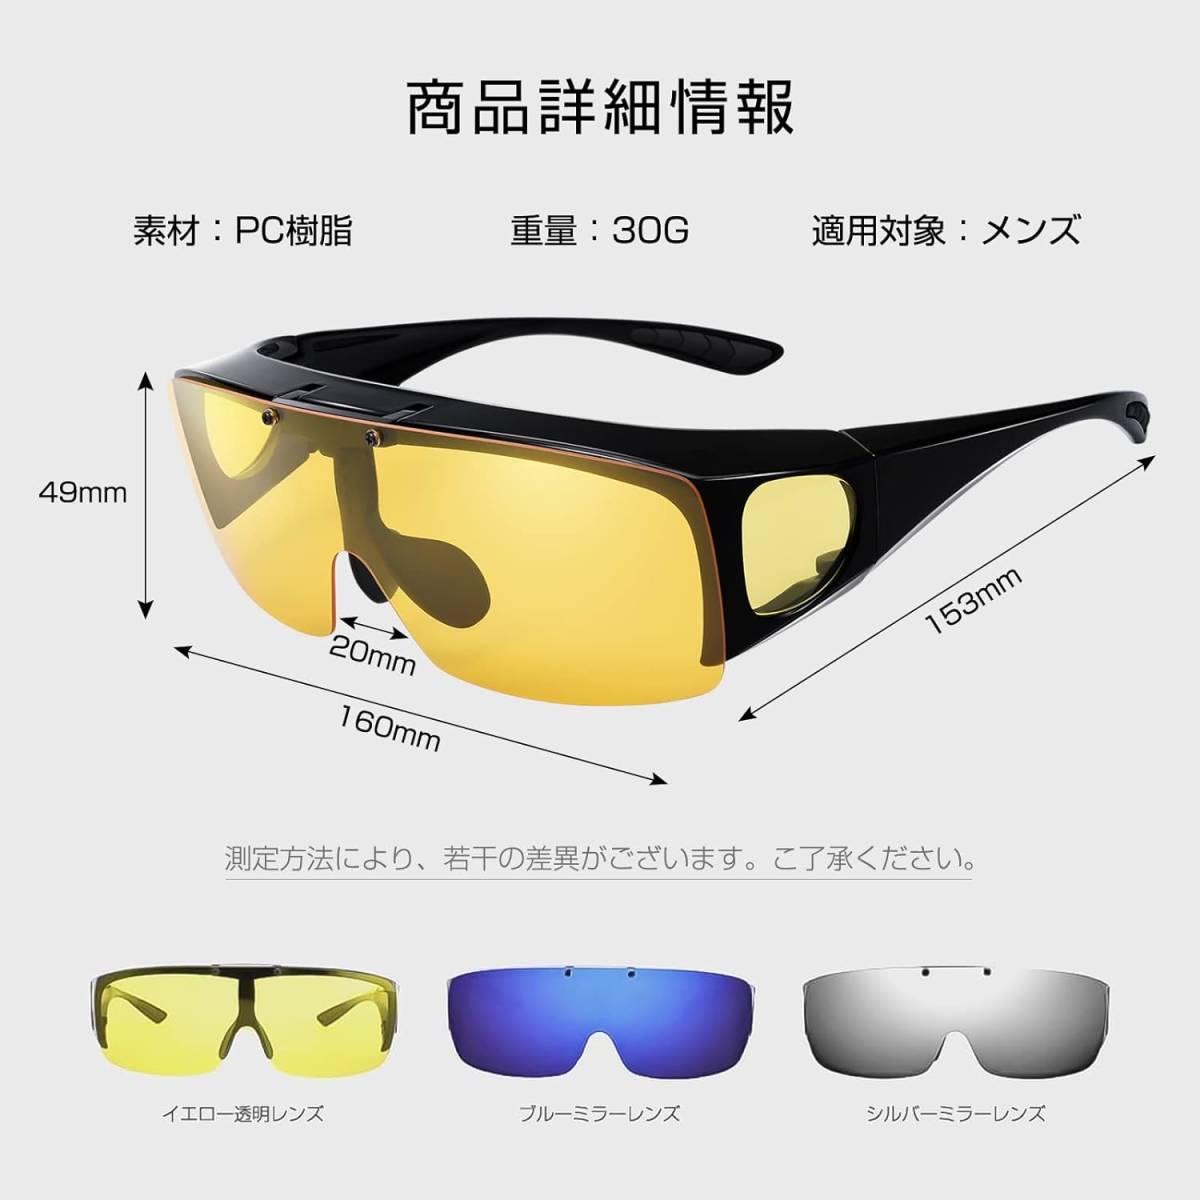 メガネの上から着用できる 跳ね上げ式 偏光サングラス オーバーサングラス UV400 紫外線カット 自転車 ランニング ゴルフ 野球 イエロー